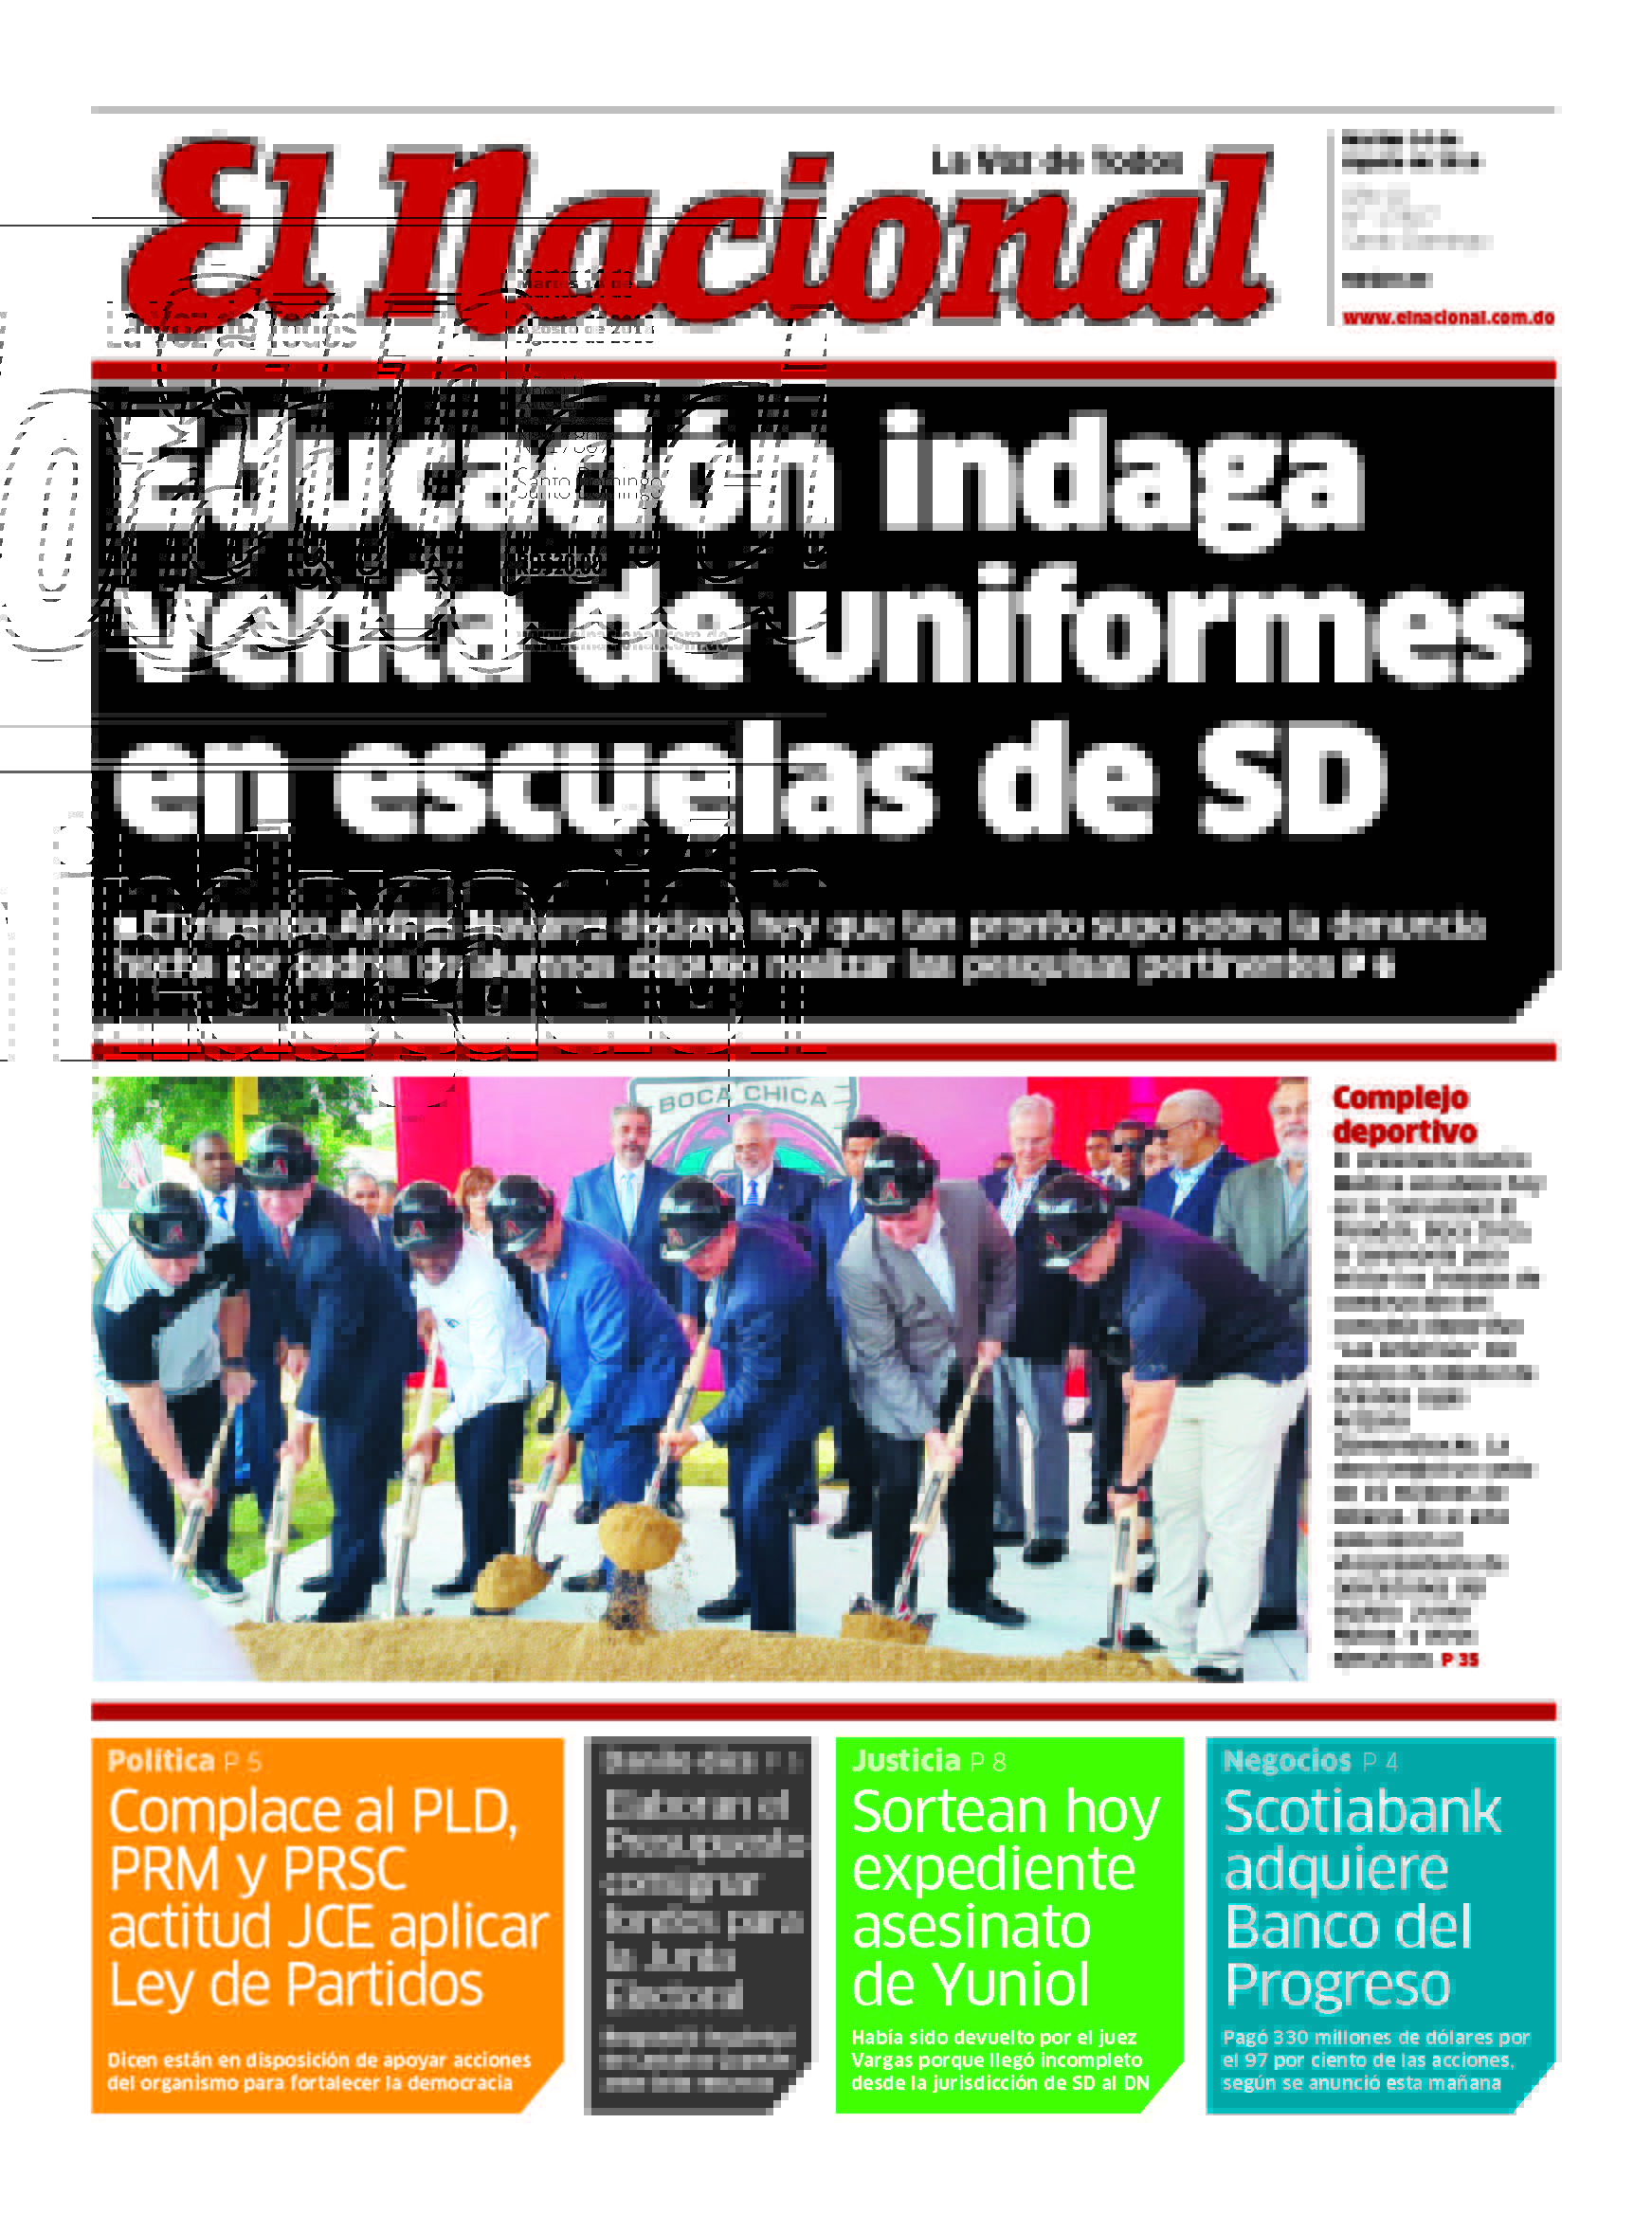 Portada Periódico El Nacional, Martes 14 de Agosto 2018